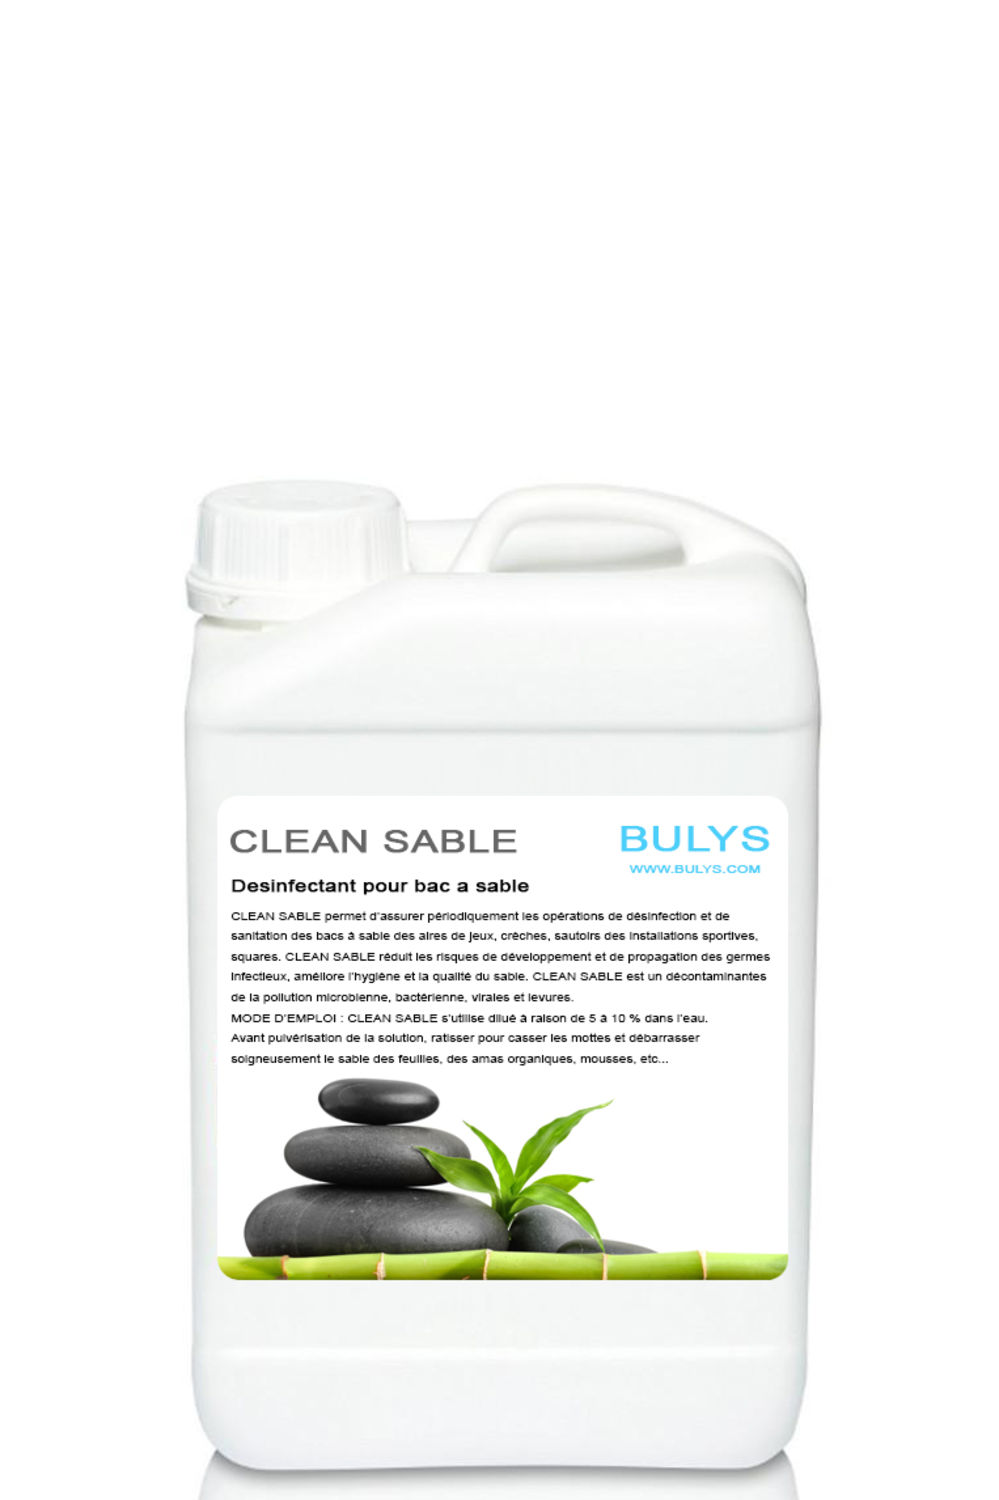 Desinfectant pour bac a sable CLEAN SABLE, BULYS